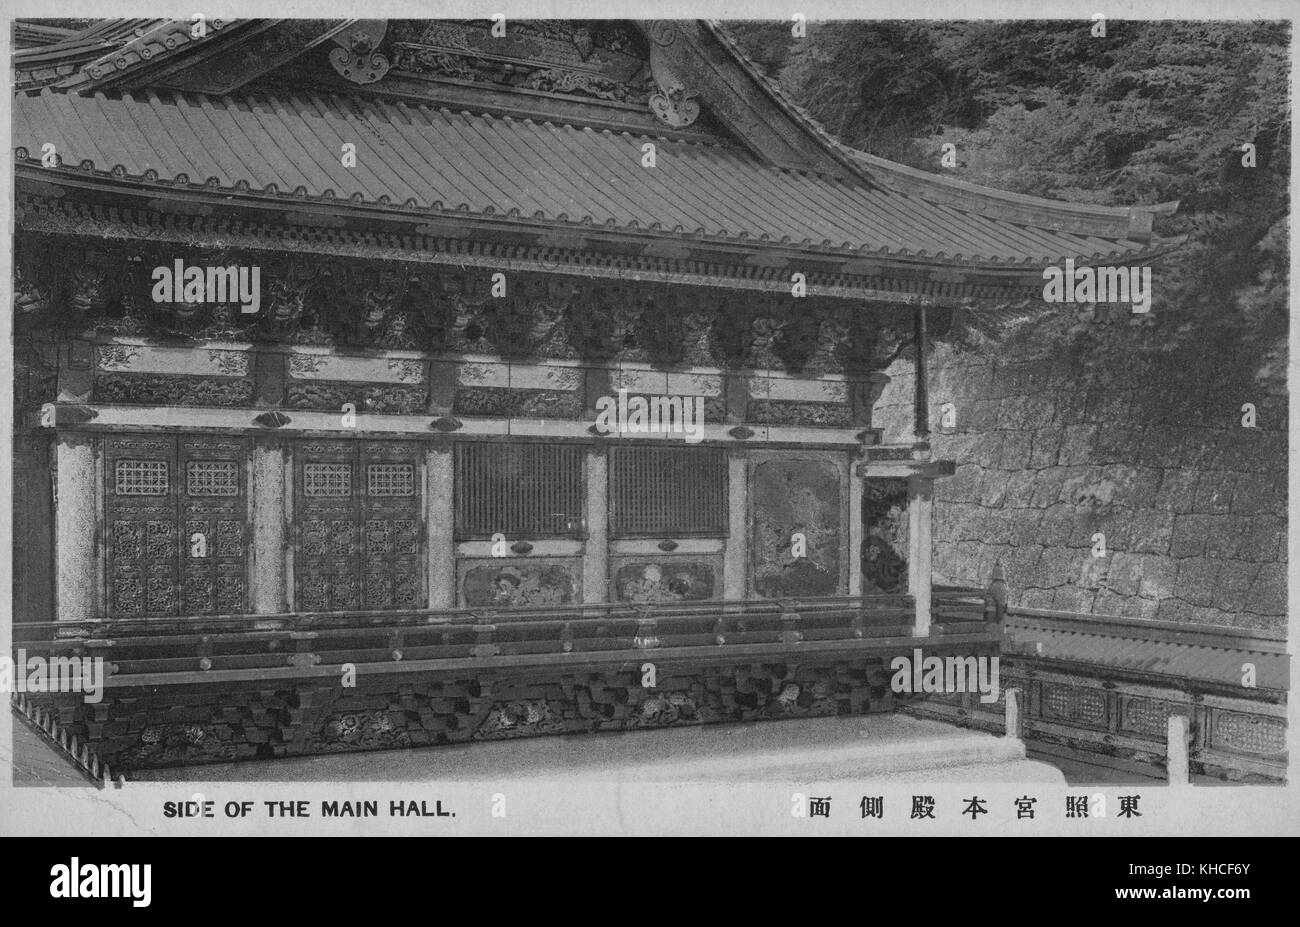 Una cartolina che presenta una vista esterna della sala principale in un Tempio Buddista, l'edificio presenta sculture in legno ed e' protetto da un alto muro di pietra e da alberi, Giappone, 1900. Dalla Biblioteca pubblica di New York. Foto Stock